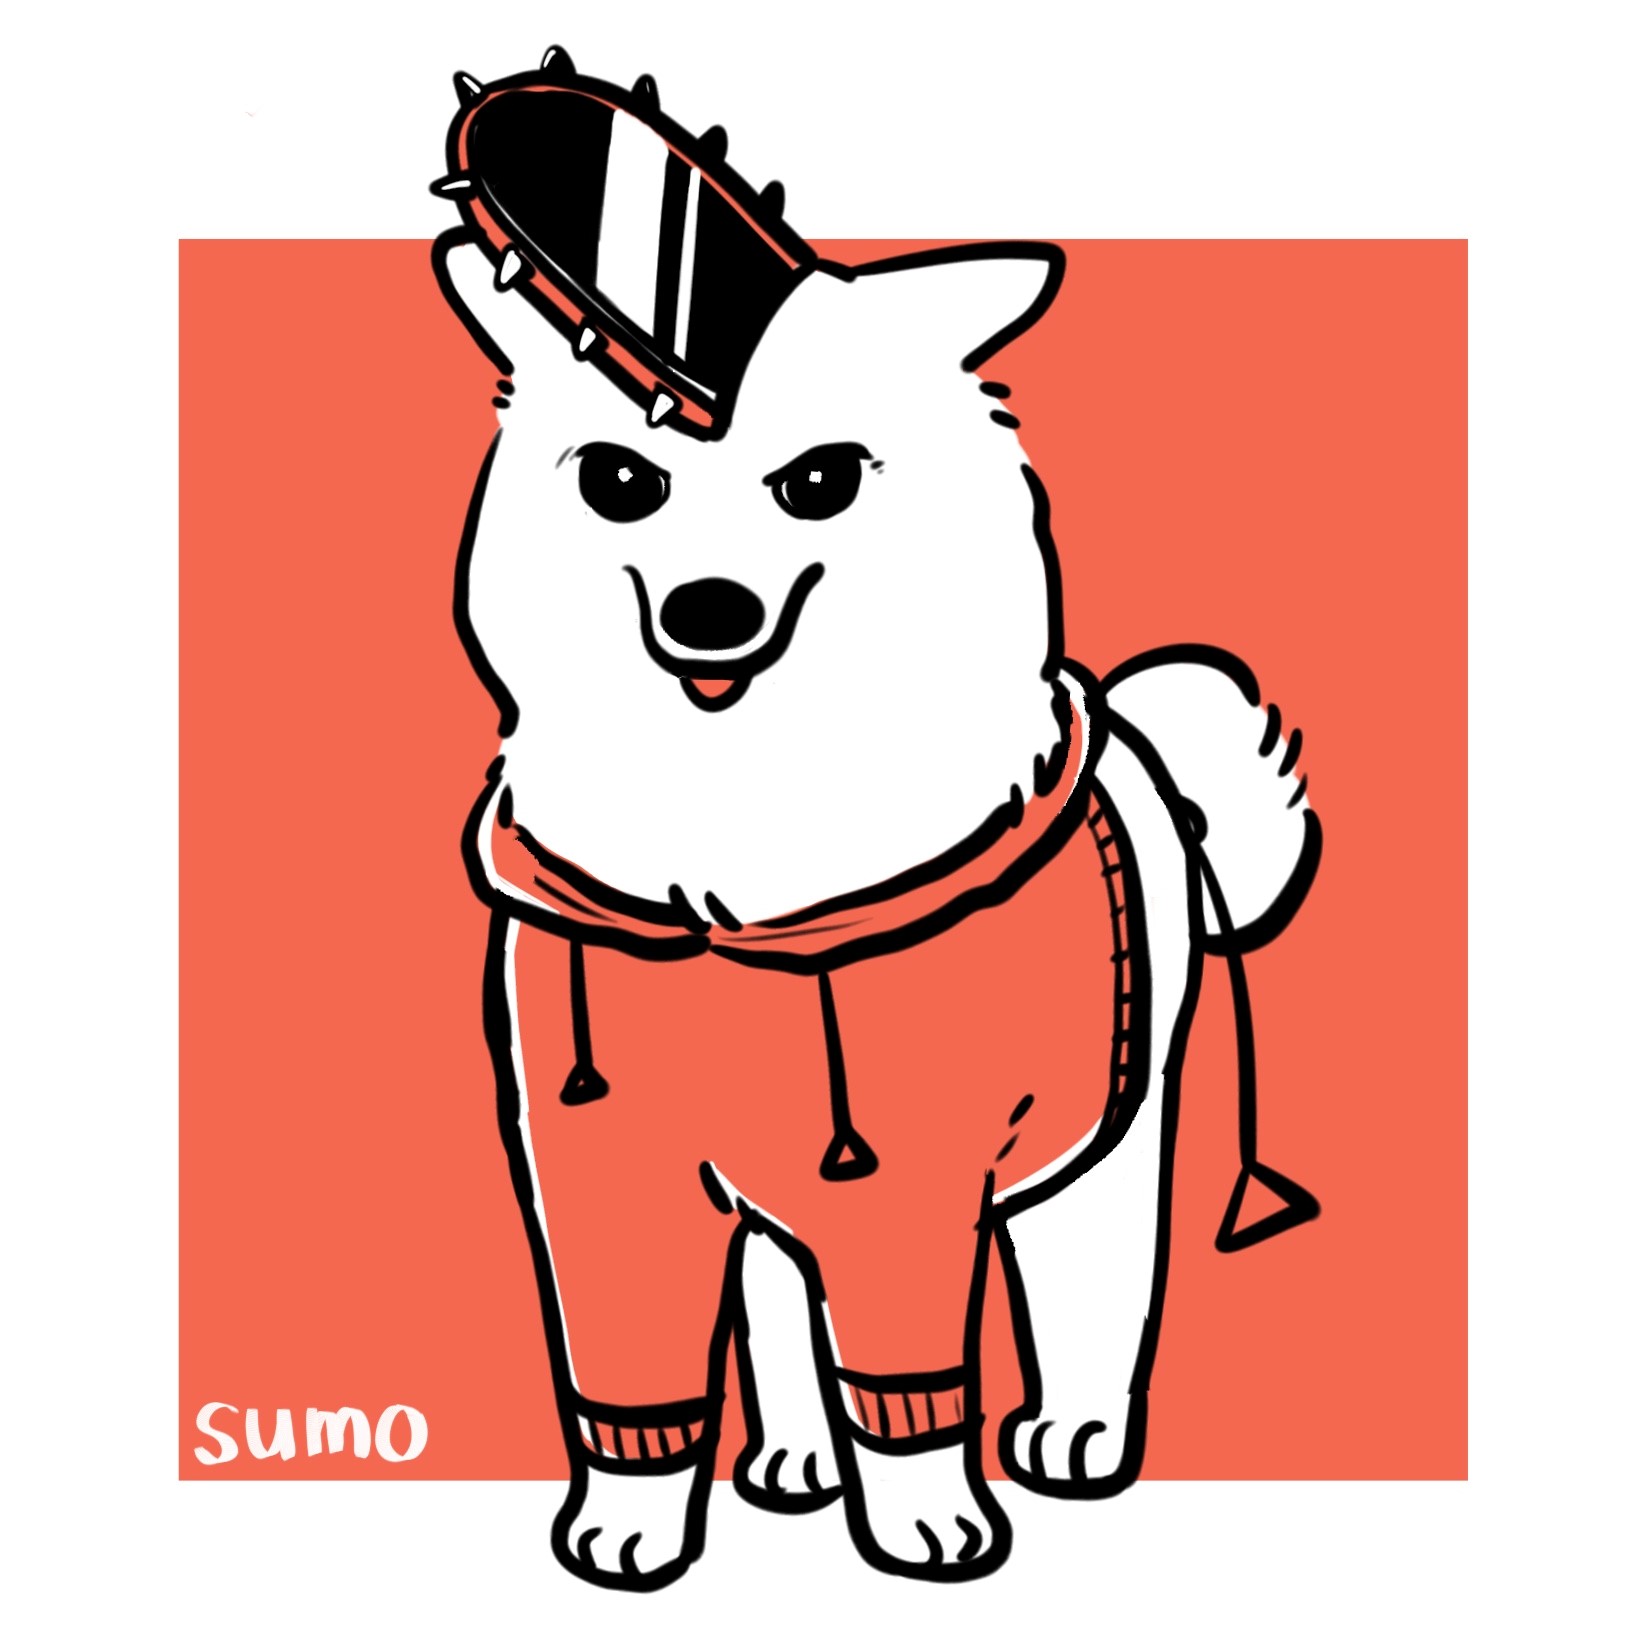 sumo x csm (Customized artwork)